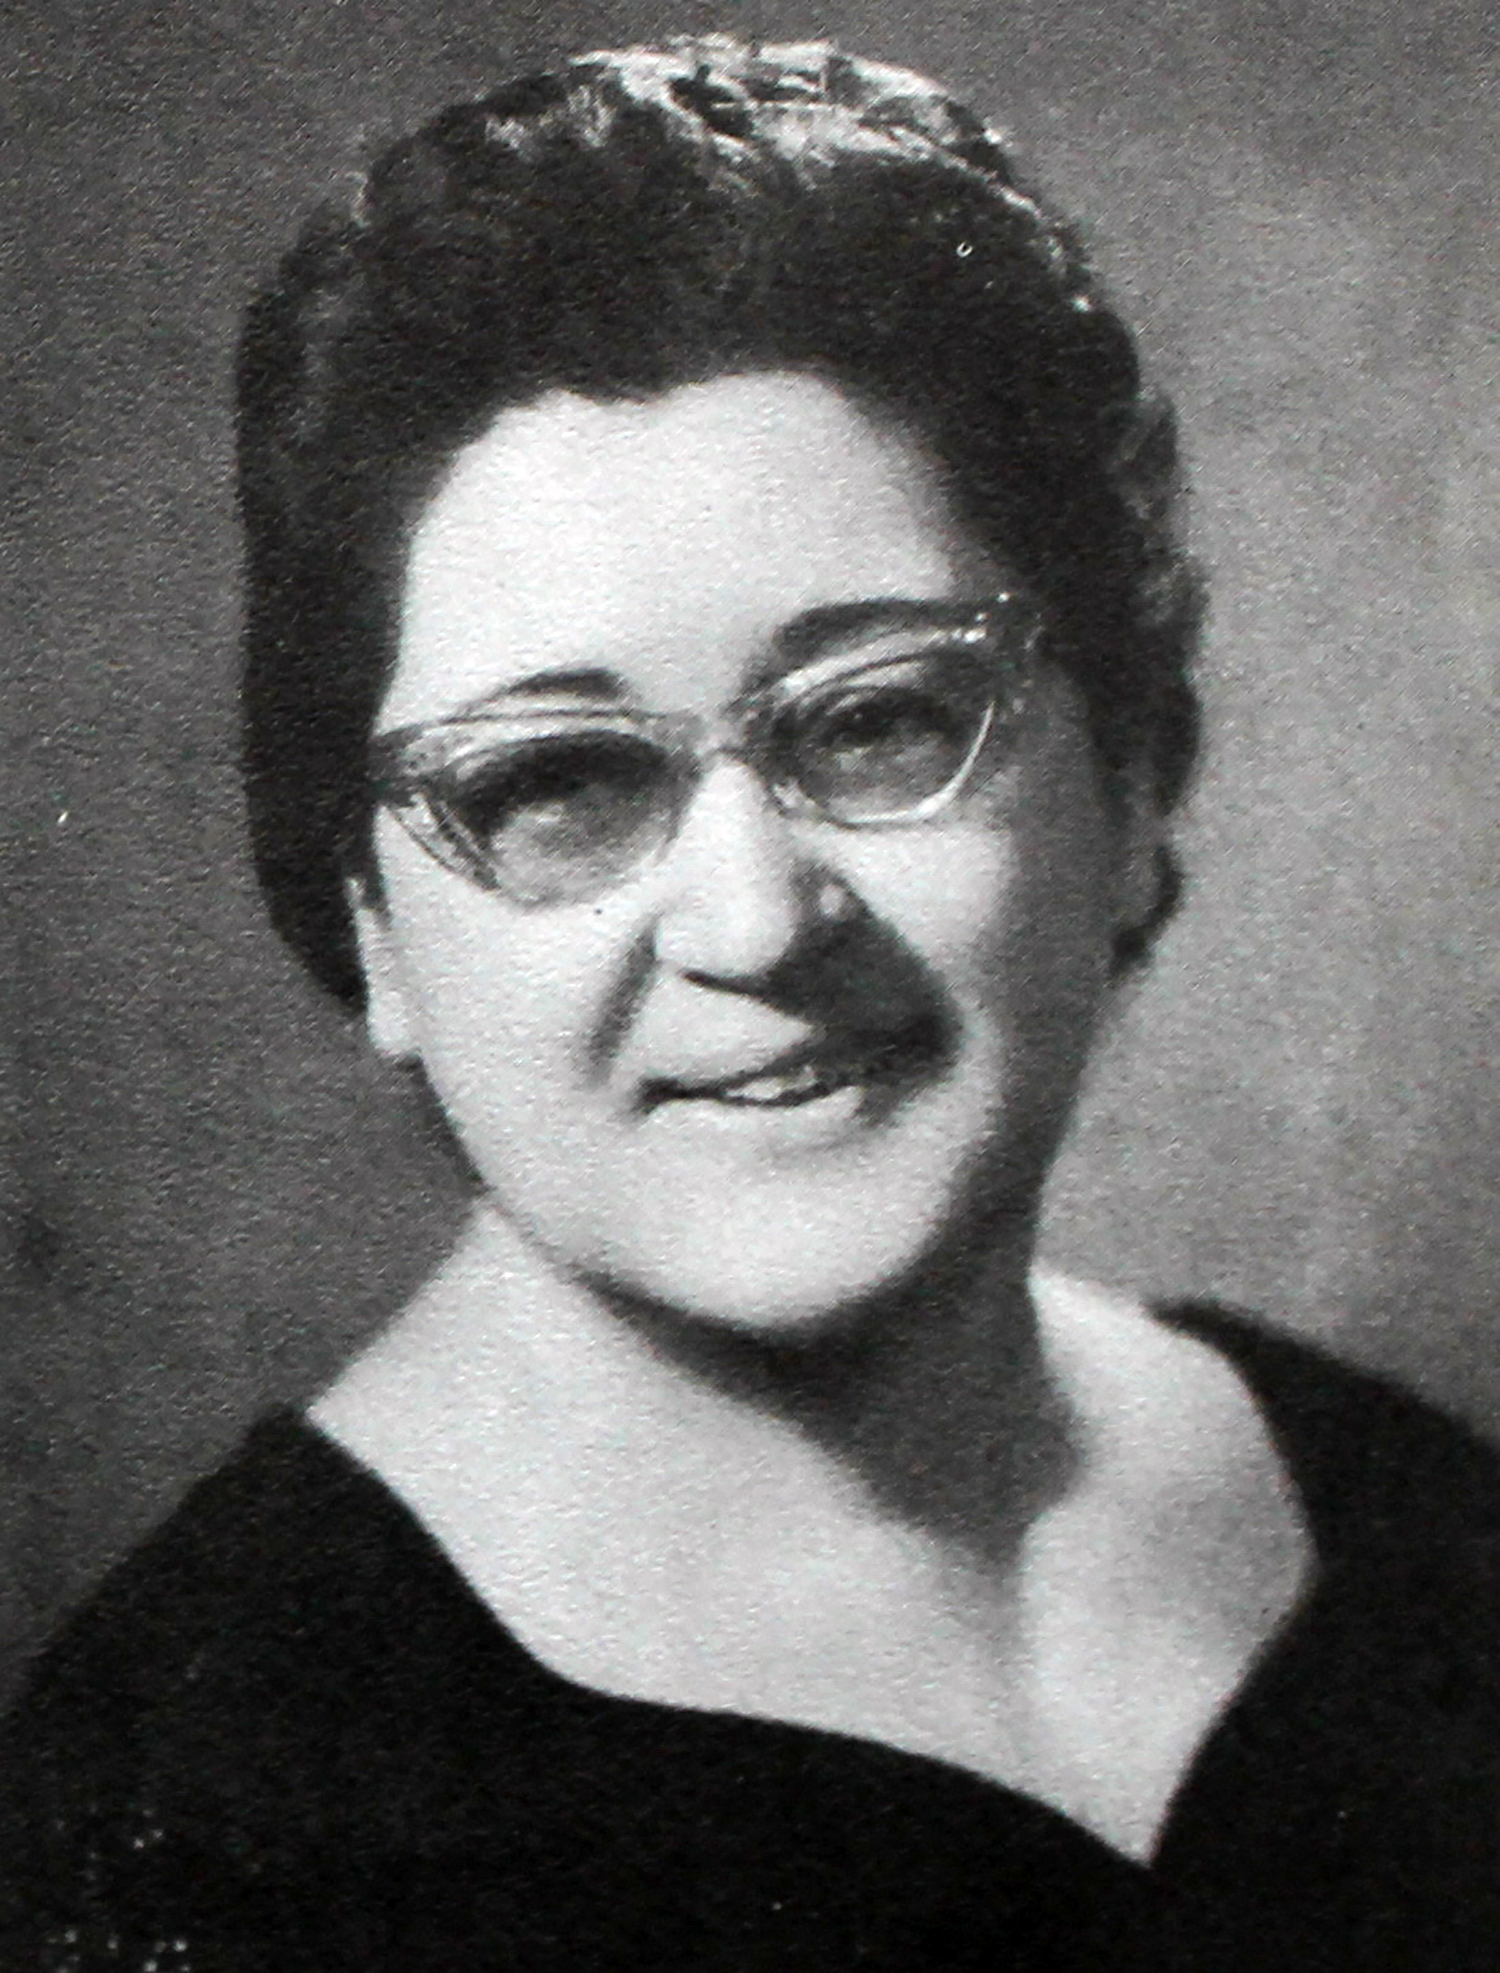 Dean of Women (1965-1967)